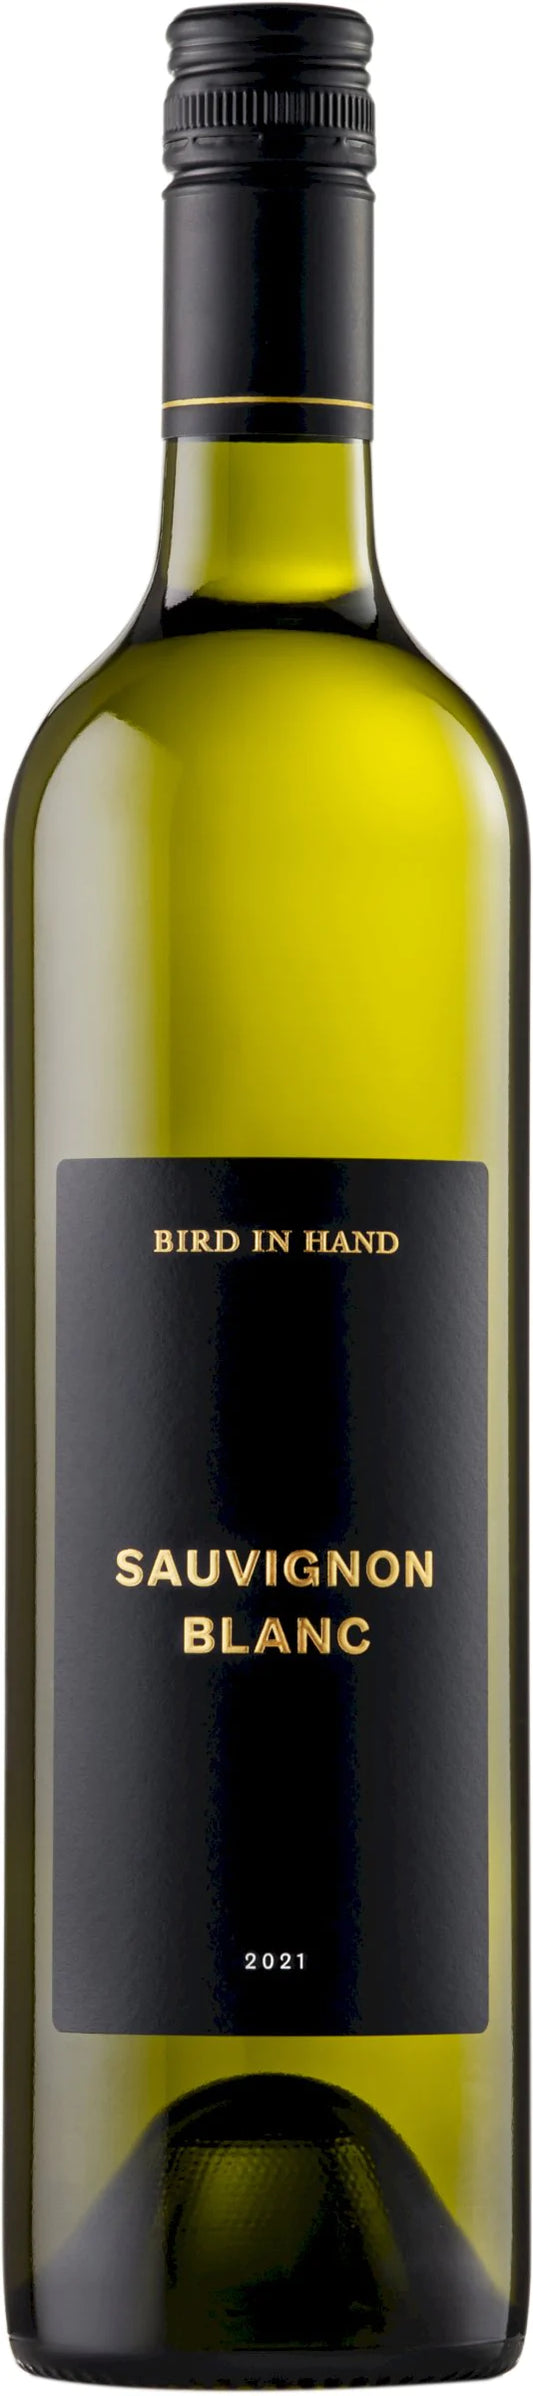 Bird In Hand Sauvignon Blanc, Adelaide Hills, 2021